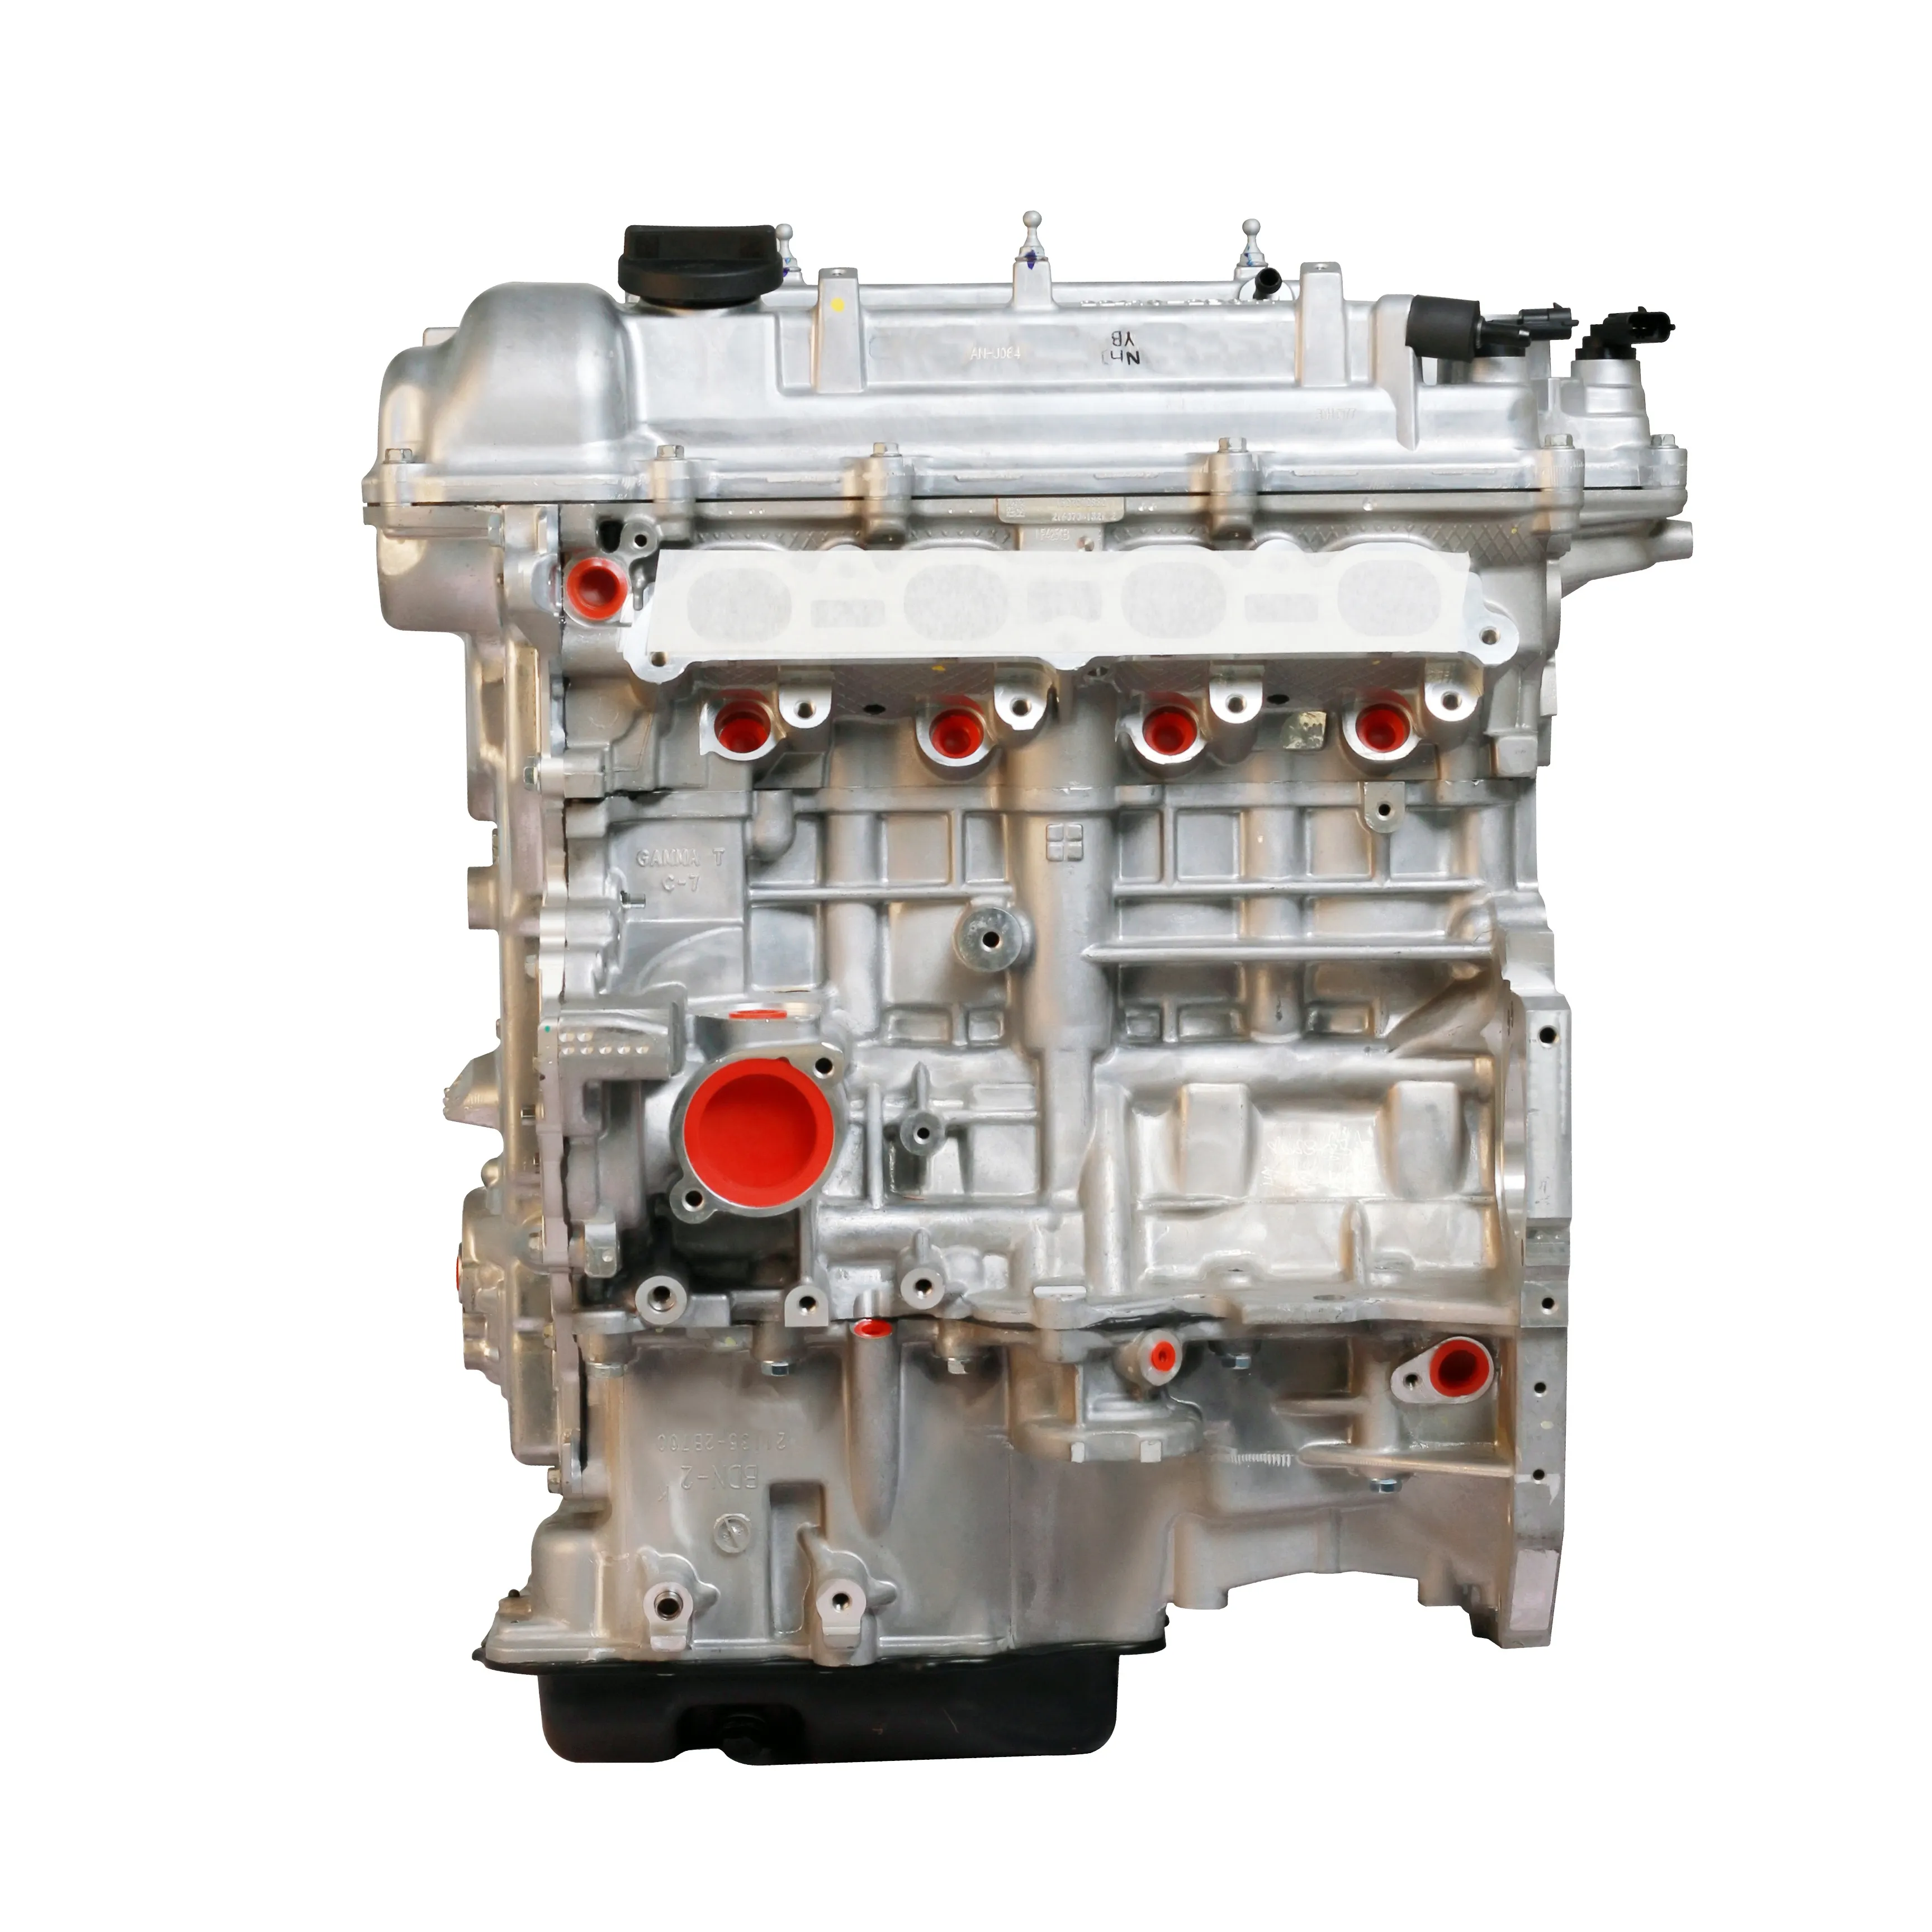 El Motor de coche coreano 1,6 T G4FJ de alta calidad es adecuado para Hyundai Kia